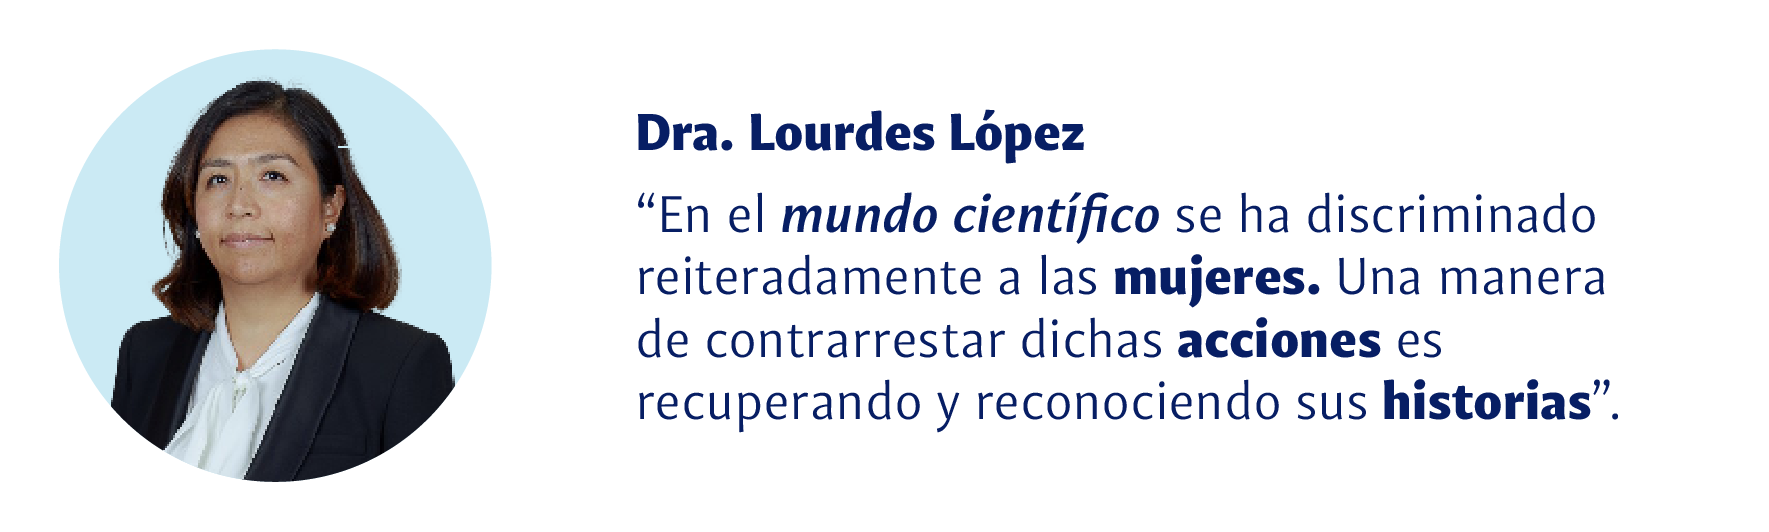 Dra. Lourdes López: En el mundo científico se ha discrominado reiteradamente a las mujeres, Una manera de contrarrestar dichas acciones es recuperando y reconociendo sus historias.